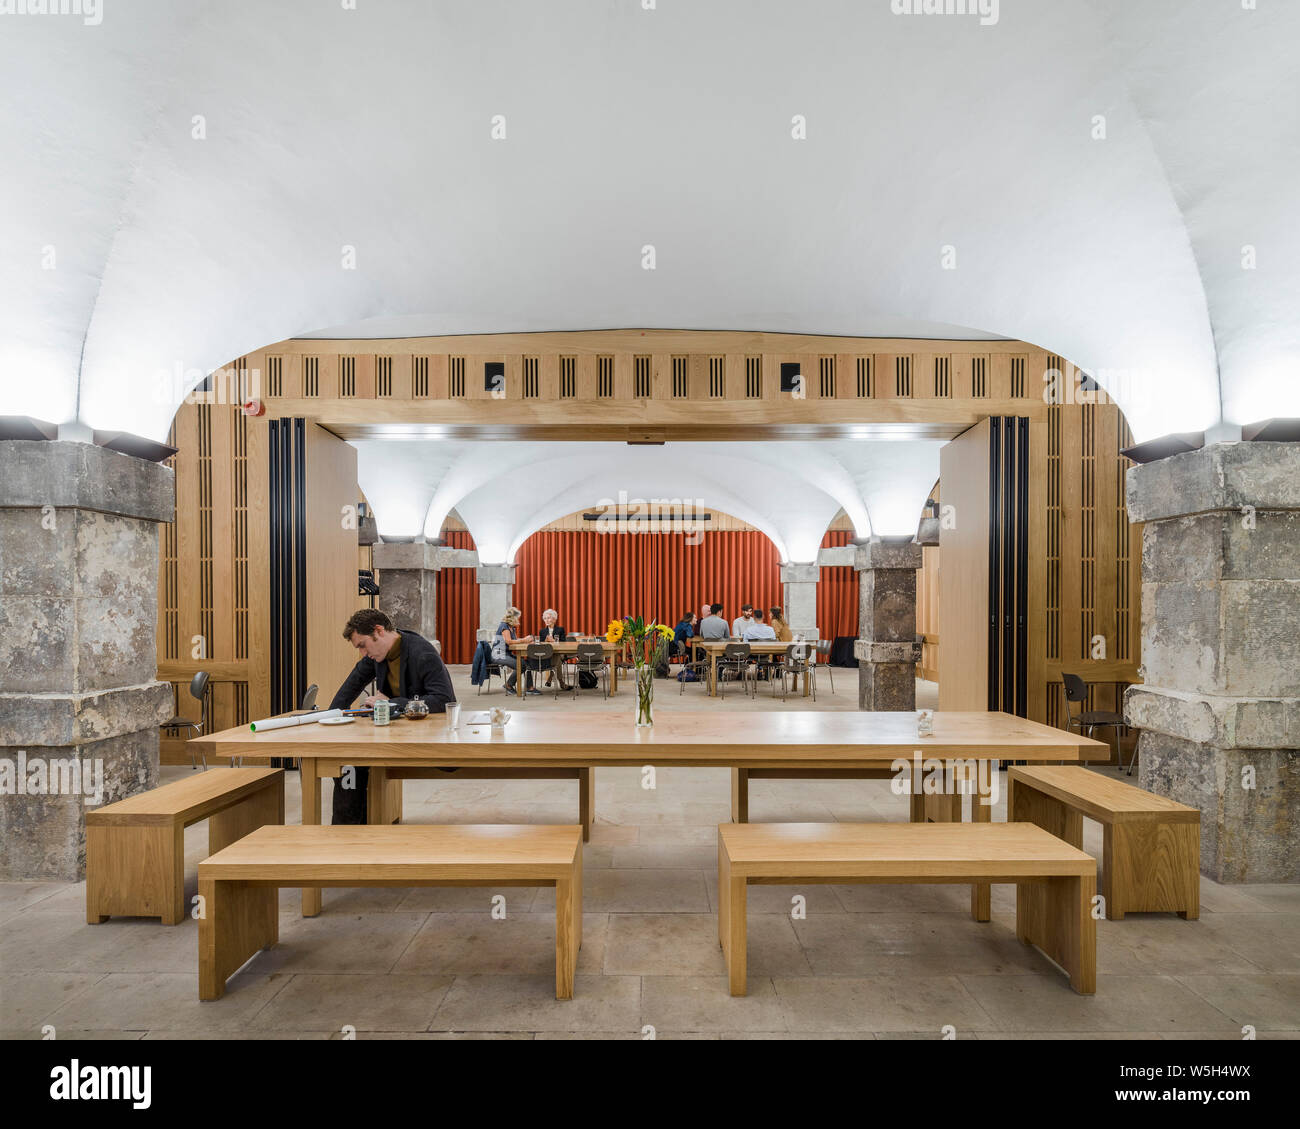 Da cafe per le prestazioni dello spazio. La cripta della Chiesa di Cristo Spitalfields, Londra, Regno Unito. Architetto: Dow Jones architetti, 2018. Foto Stock